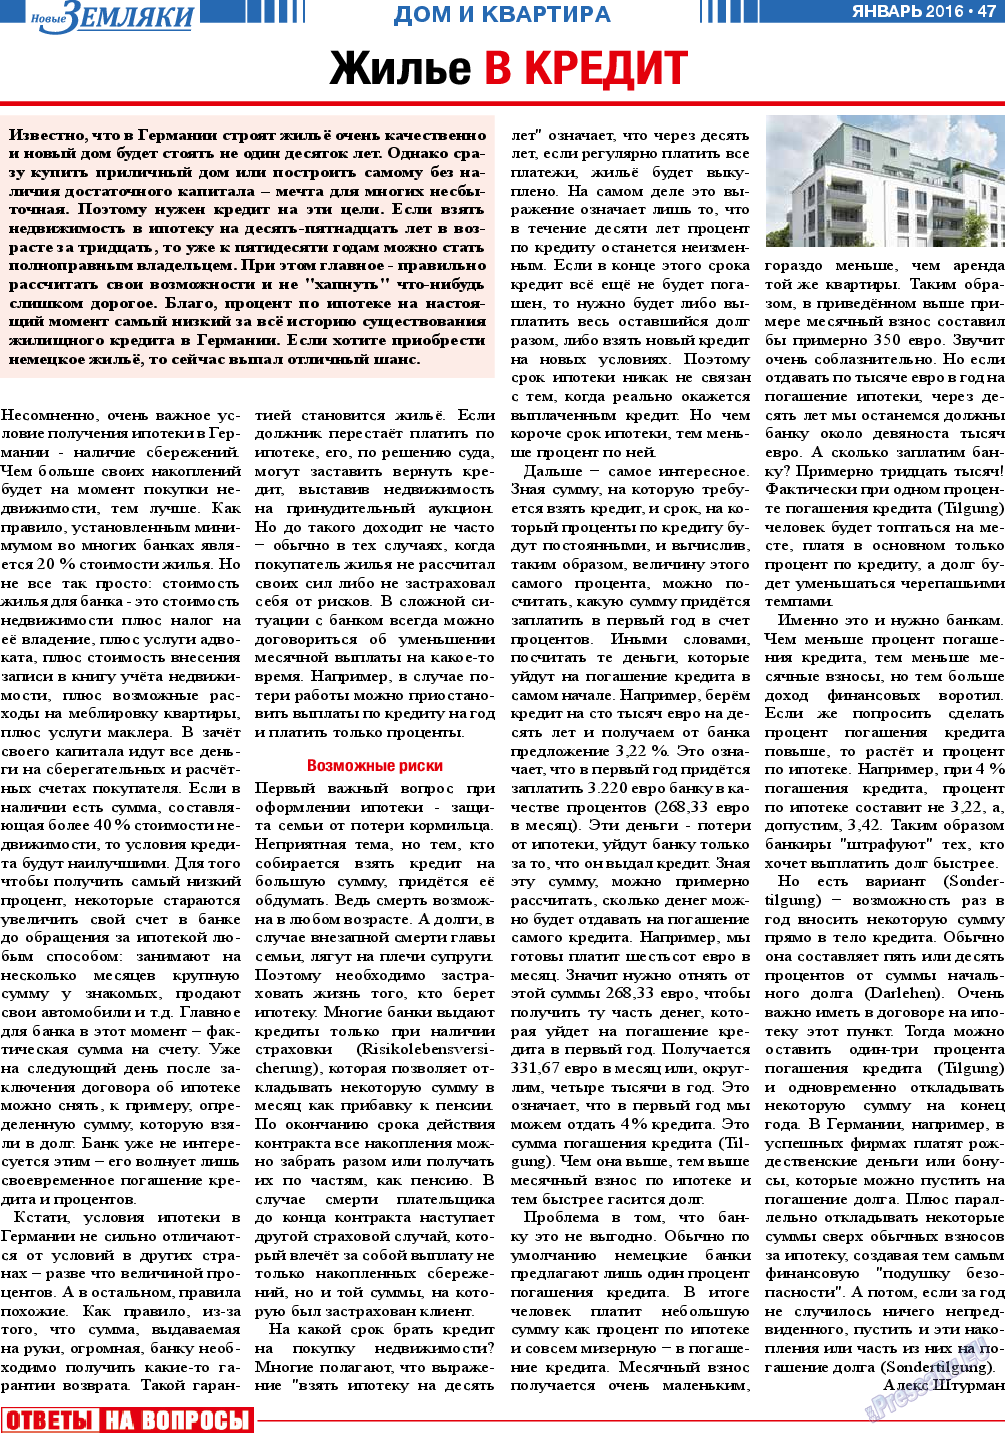 Новые Земляки, газета. 2016 №1 стр.47